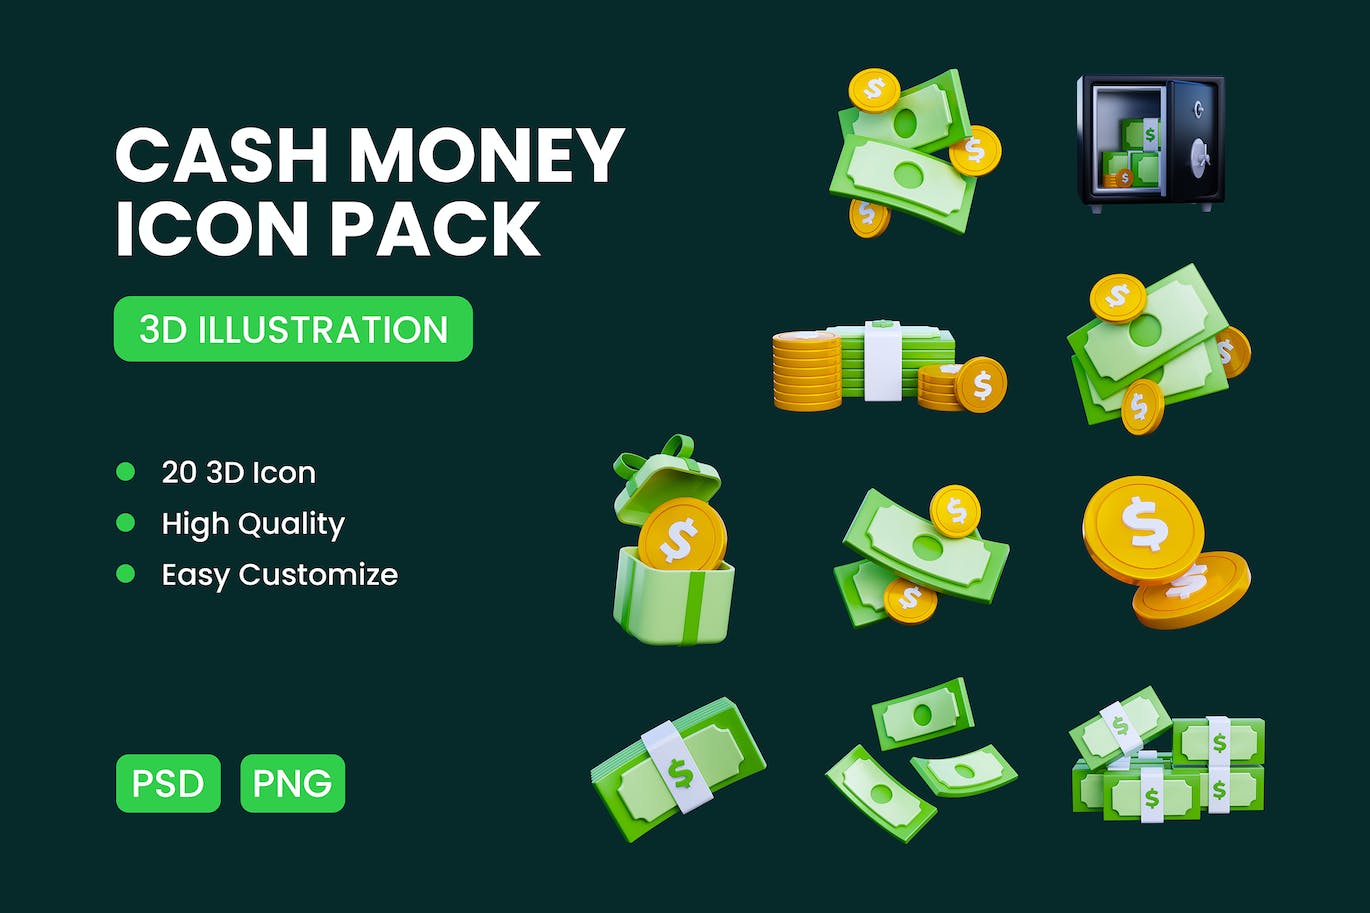 现金货币3D图标包 Cash Money 3D Icon Pack 图标素材 第1张